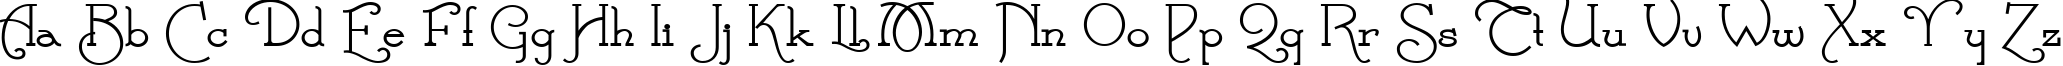 Пример написания английского алфавита шрифтом Parnas Deco